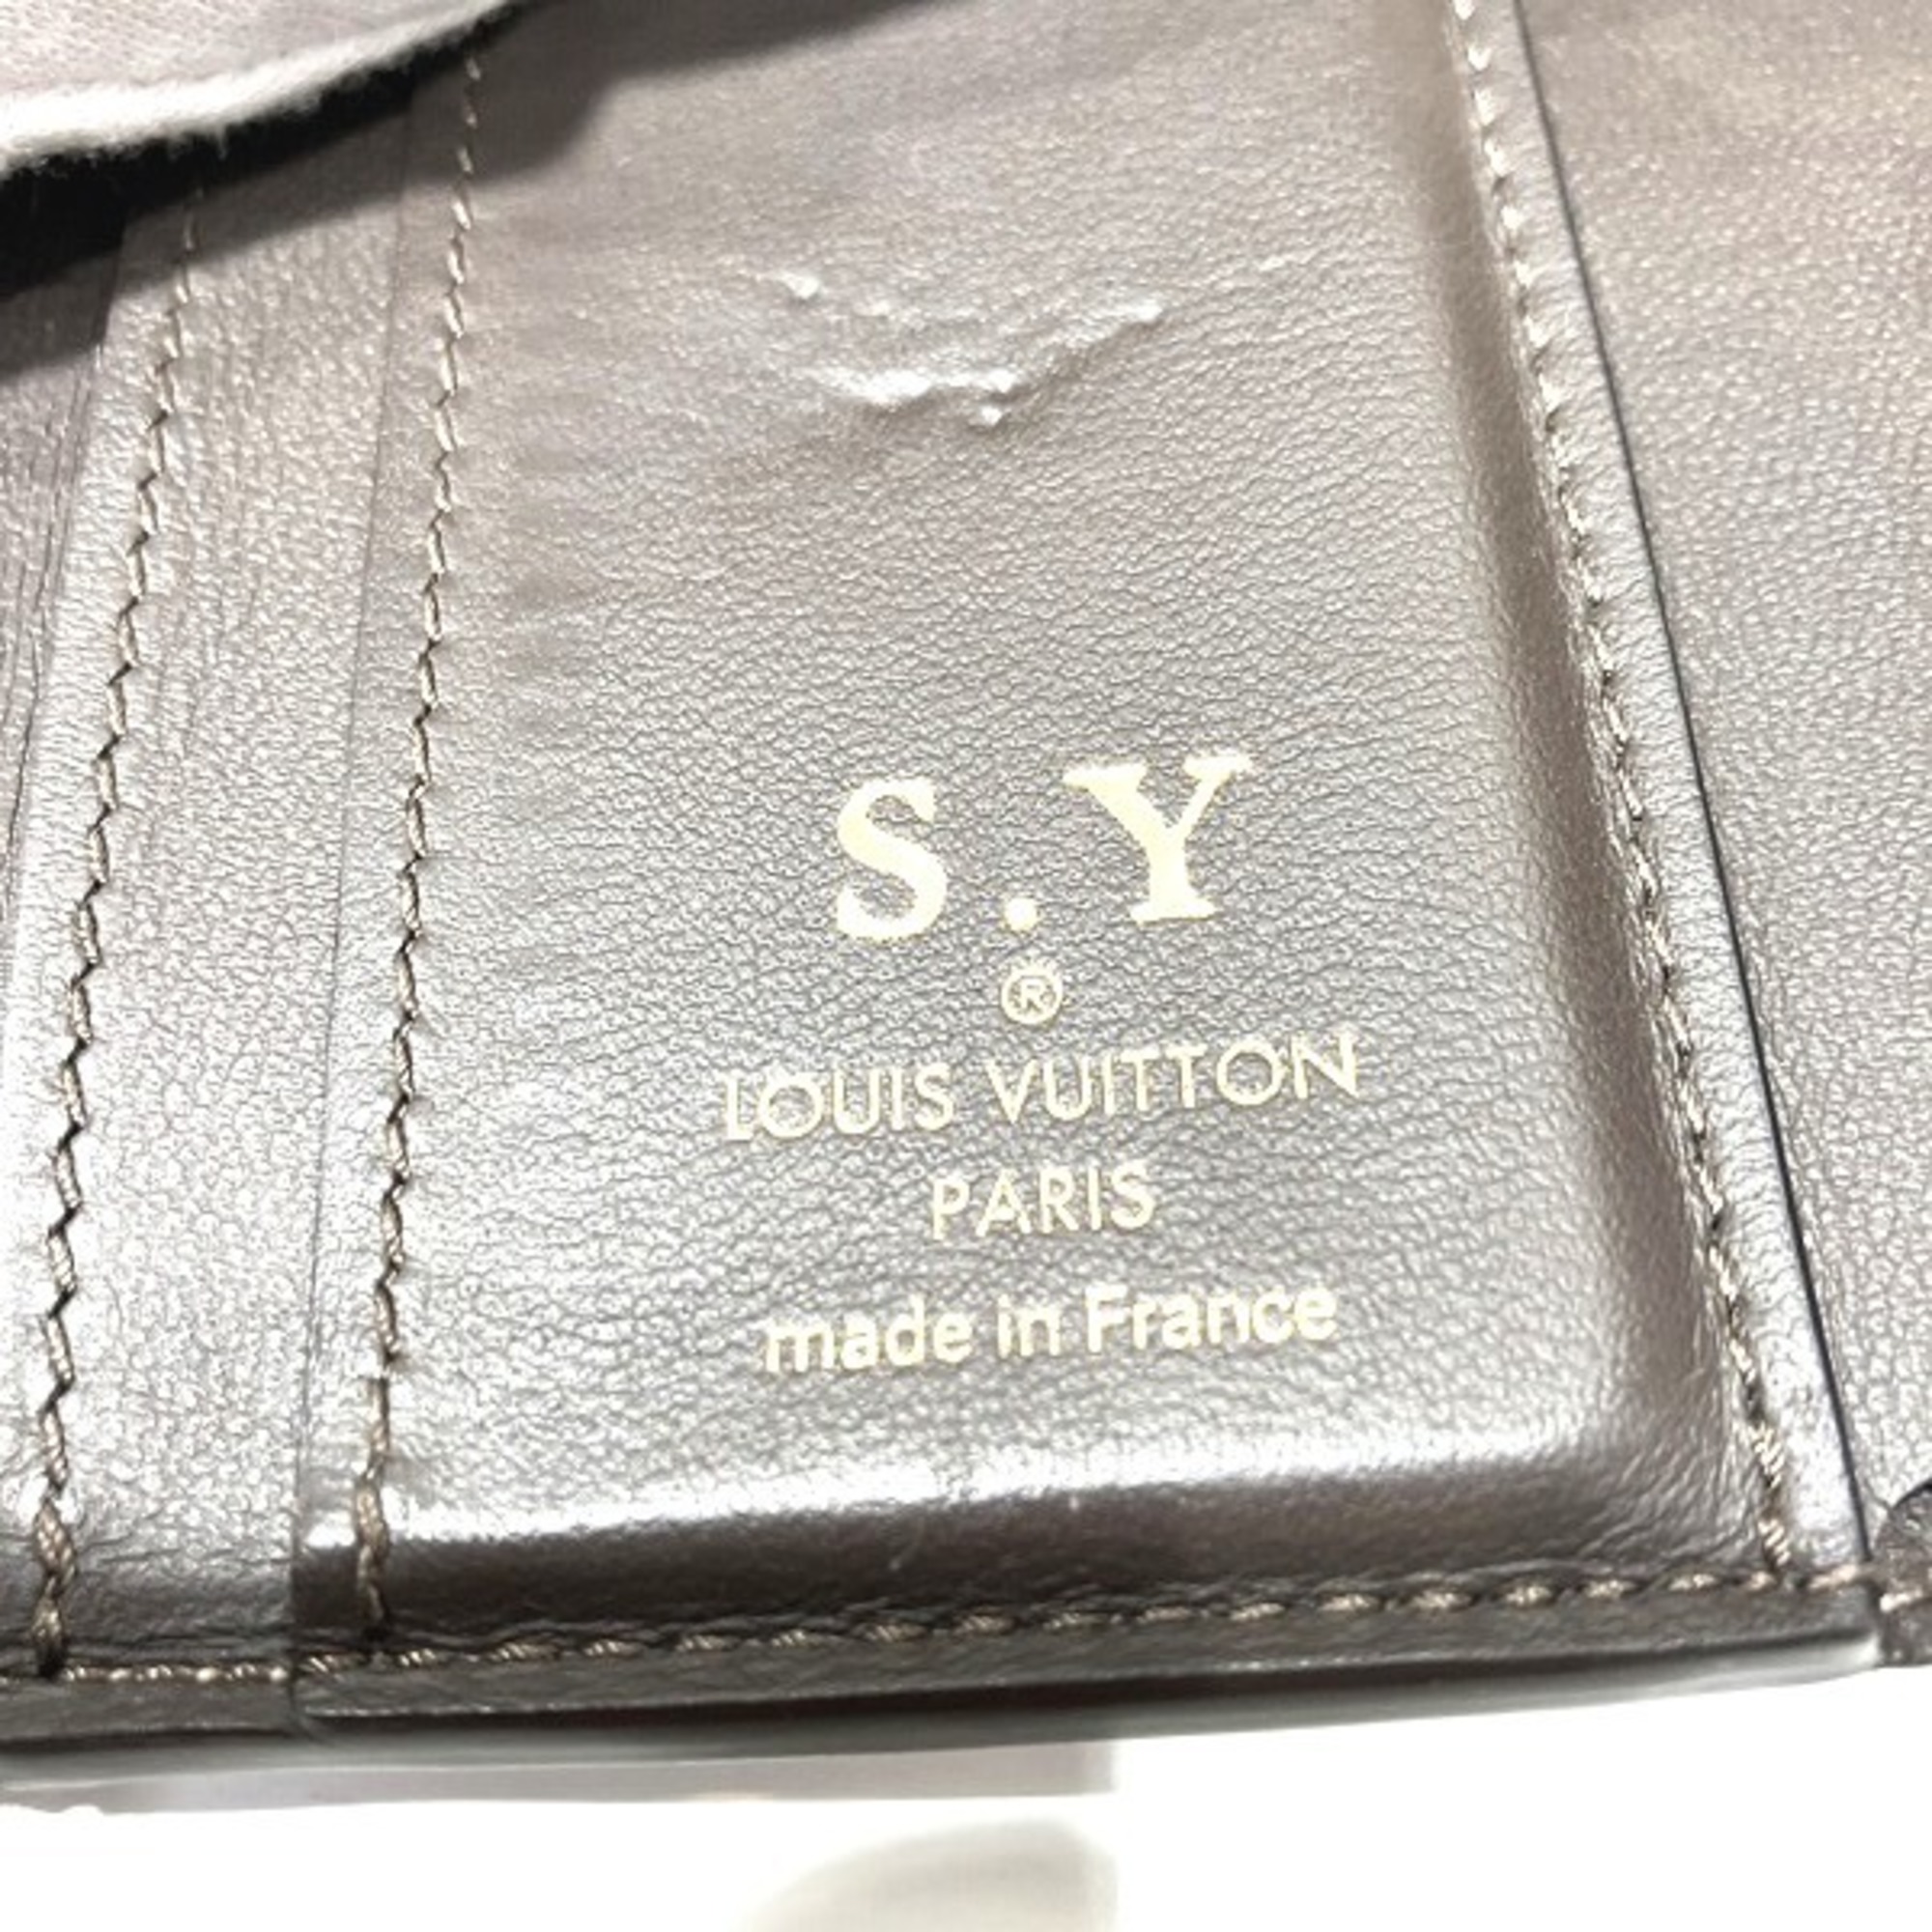 Louis Vuitton Portefeuille Capucines XS M68747 Trifold Wallet Women's